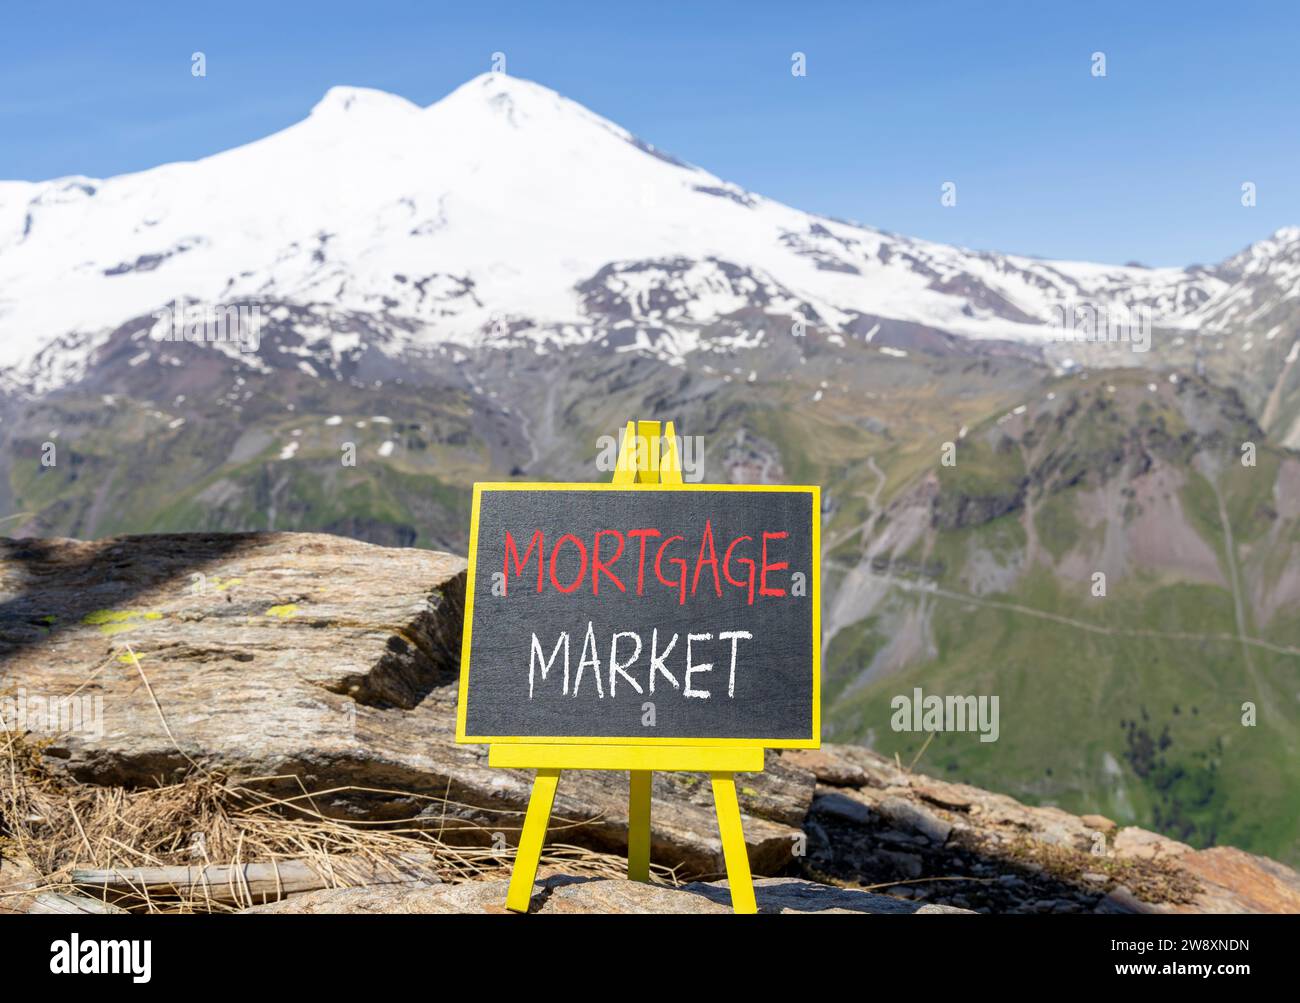 Symbole du marché hypothécaire. Mots concept marché hypothécaire sur beau tableau noir de craie. Belle montagne Elbrus fond de ciel bleu. Or Banque D'Images